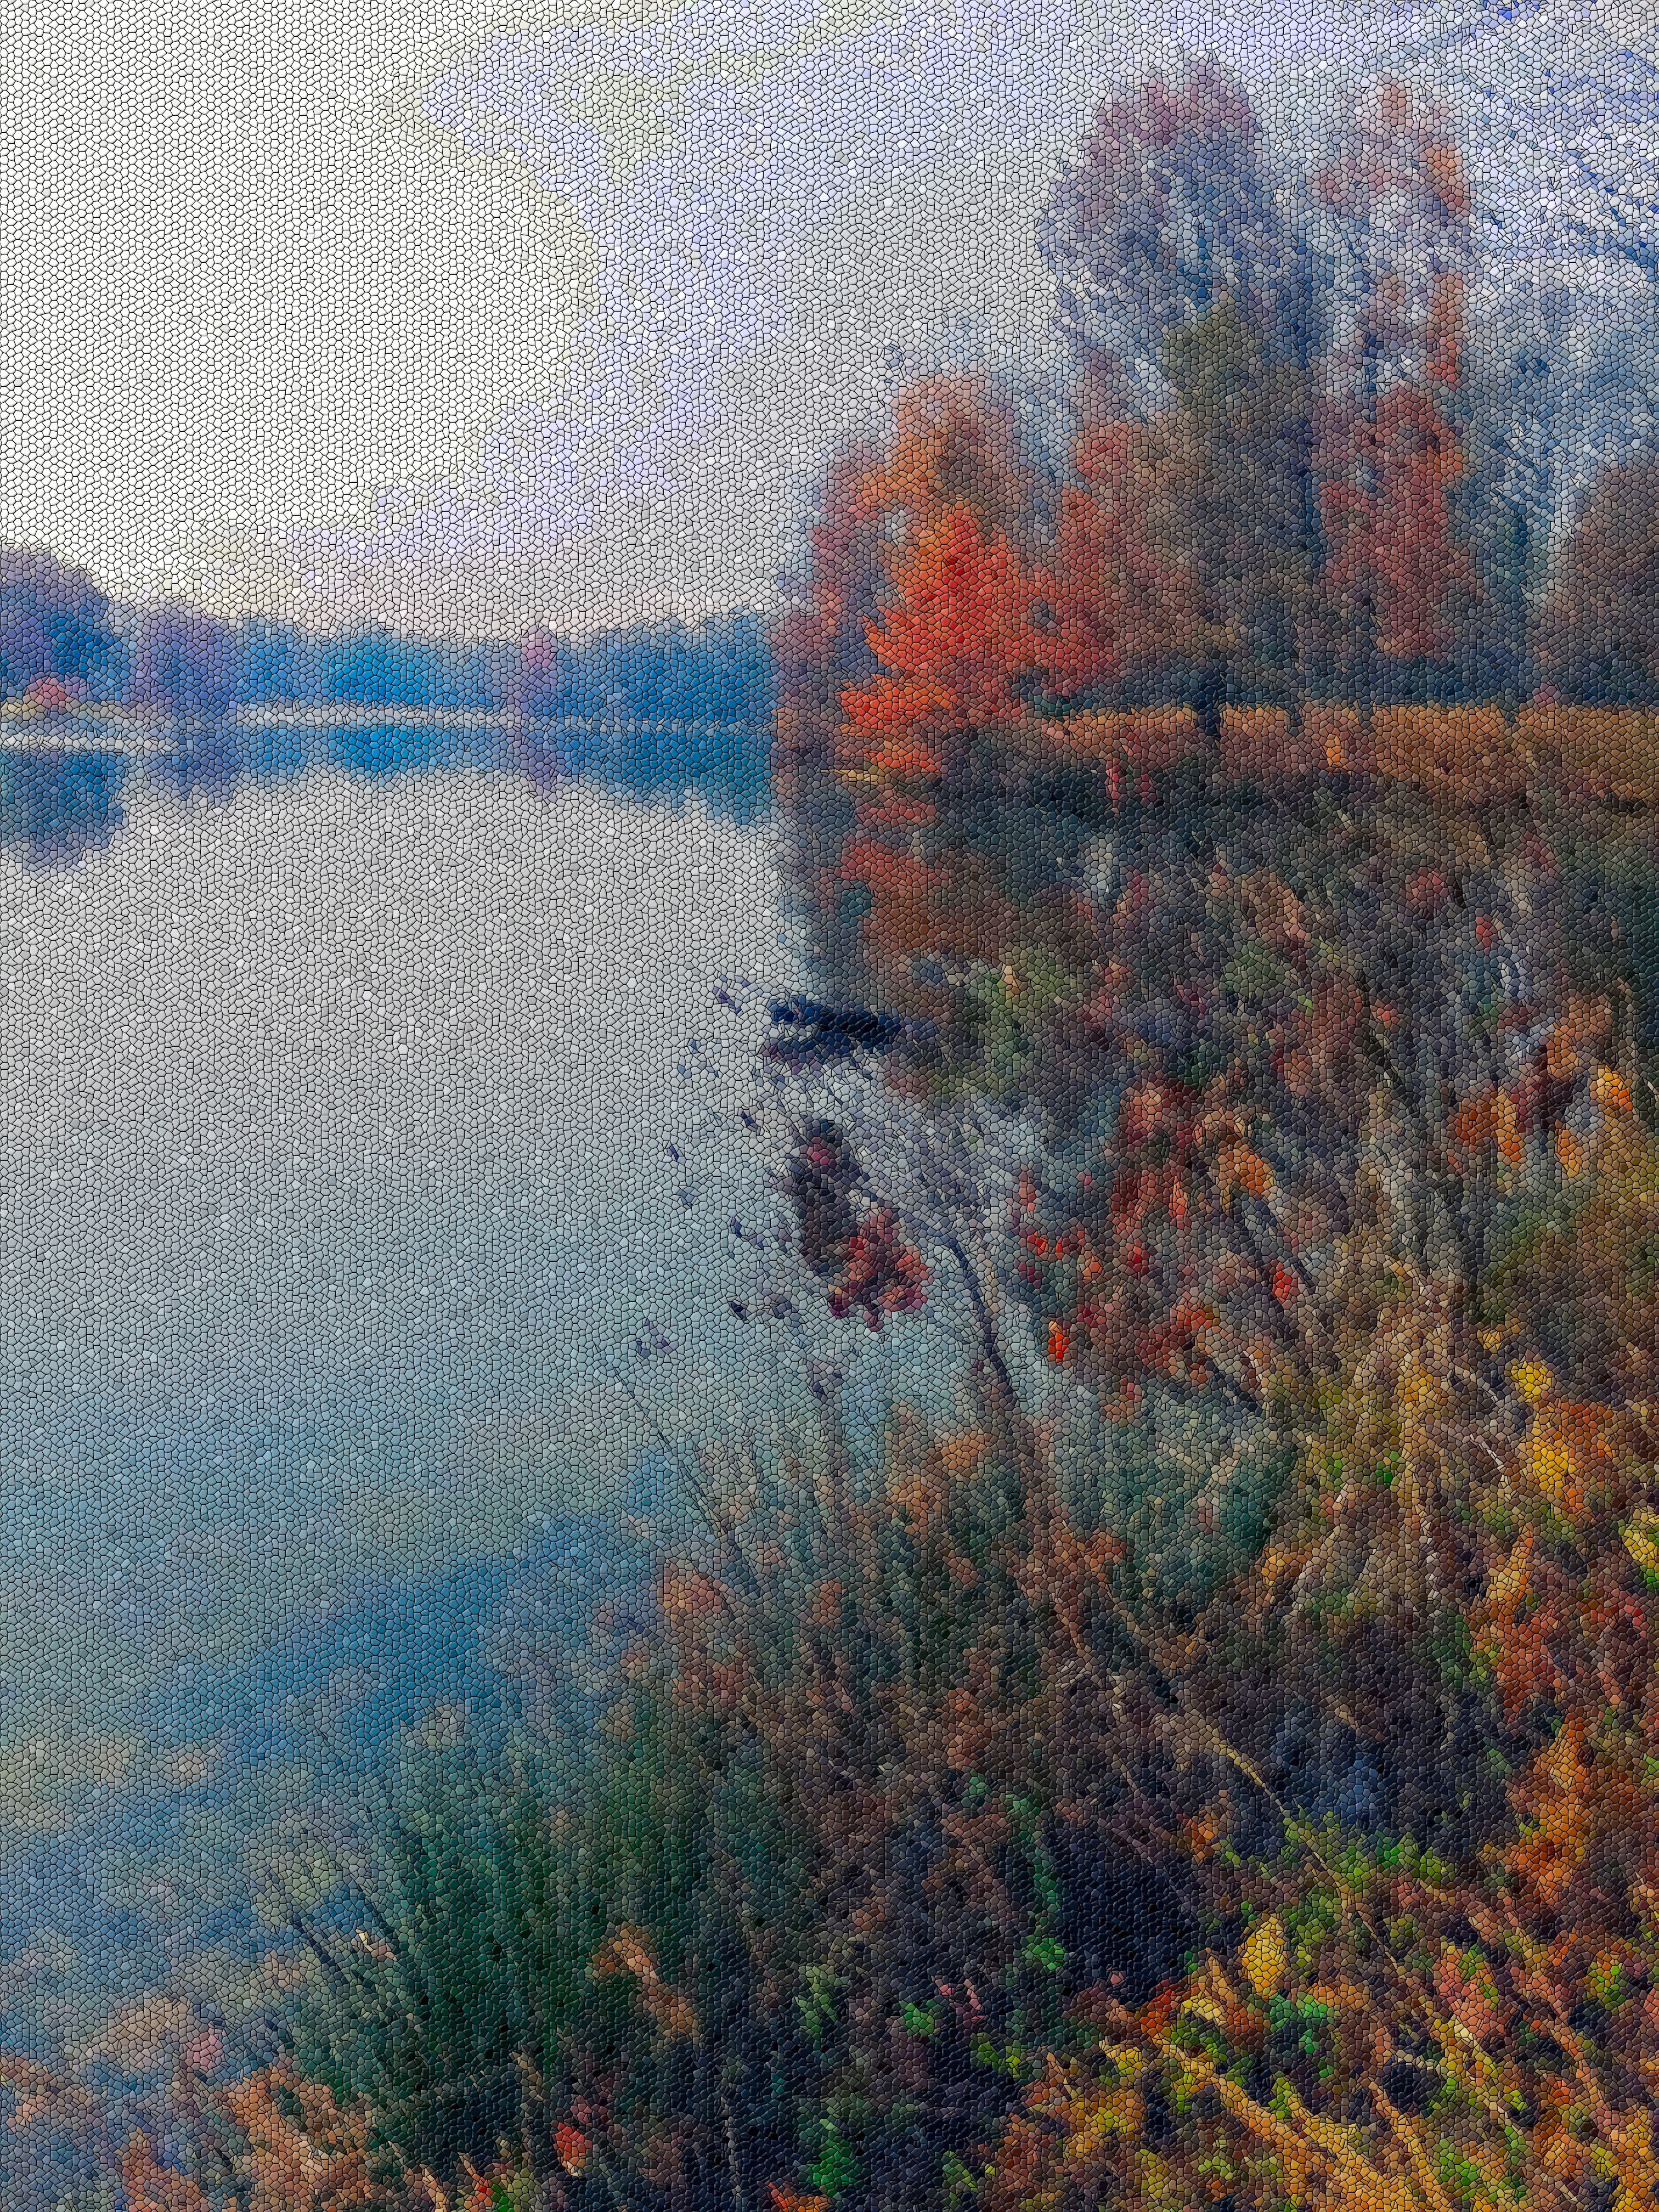 Stylized photo of lake edited using GIMP